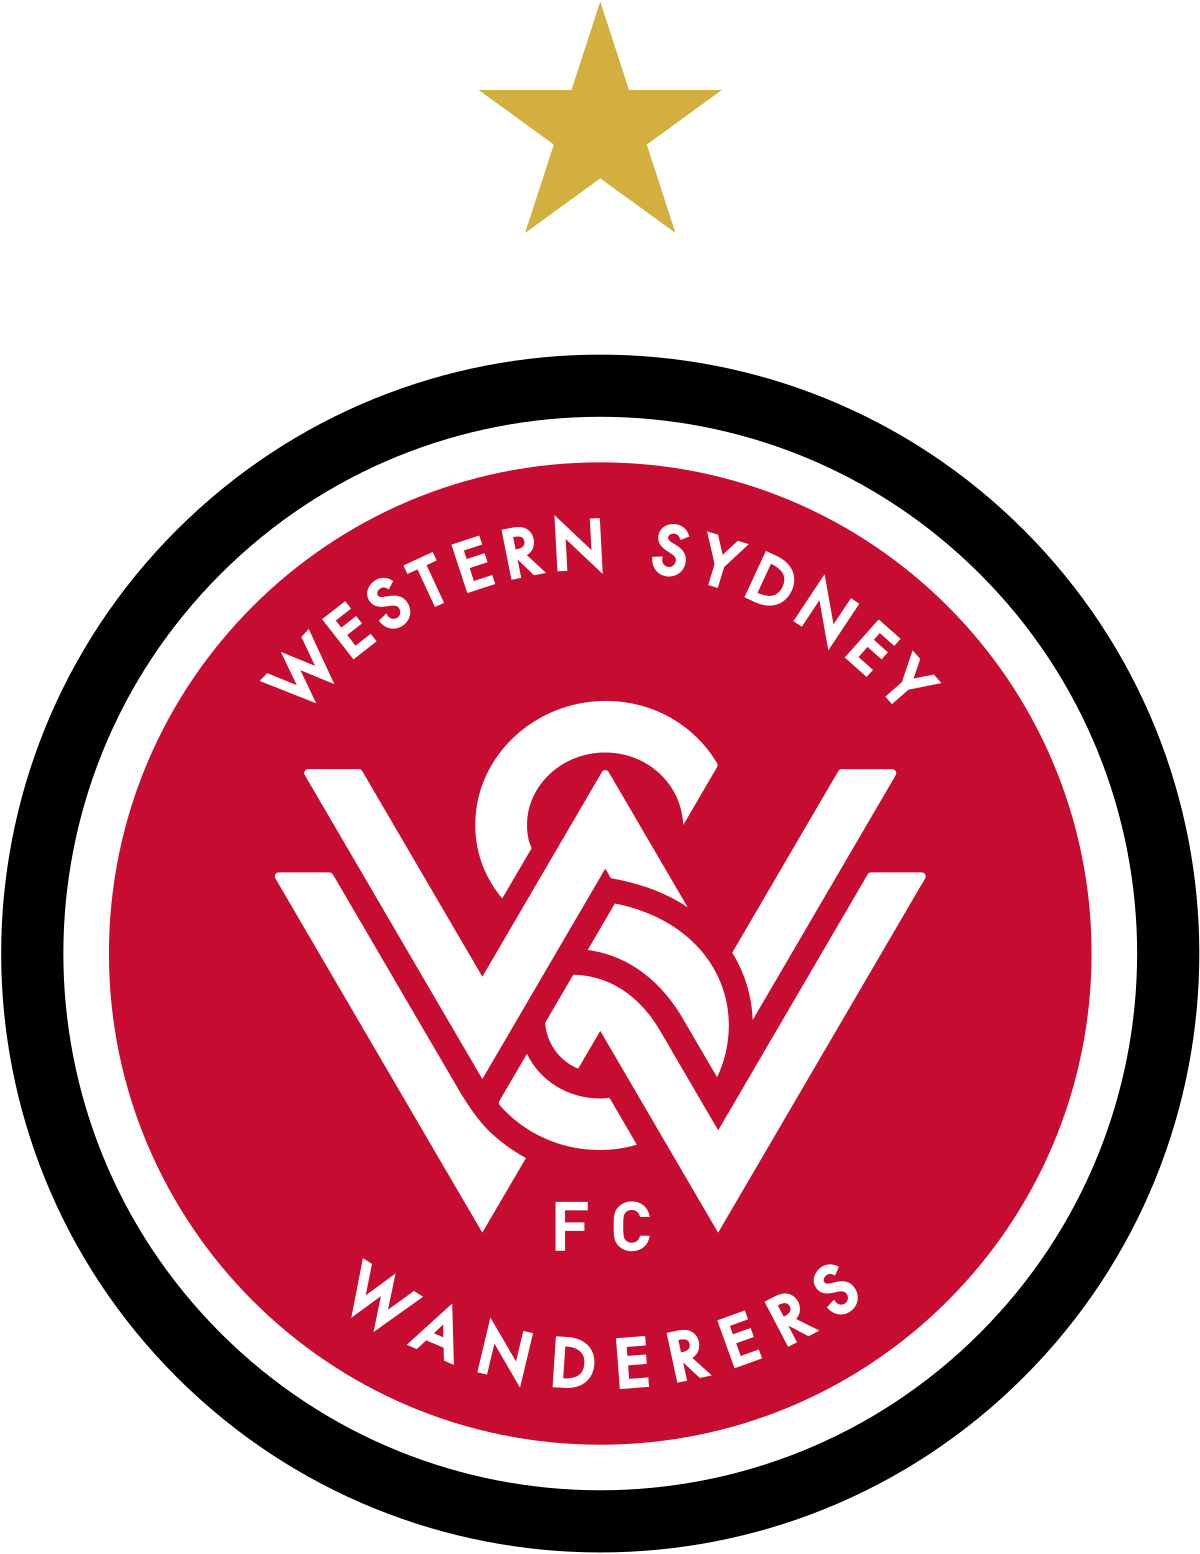 ВС Уондърърс (Ж) - Logo